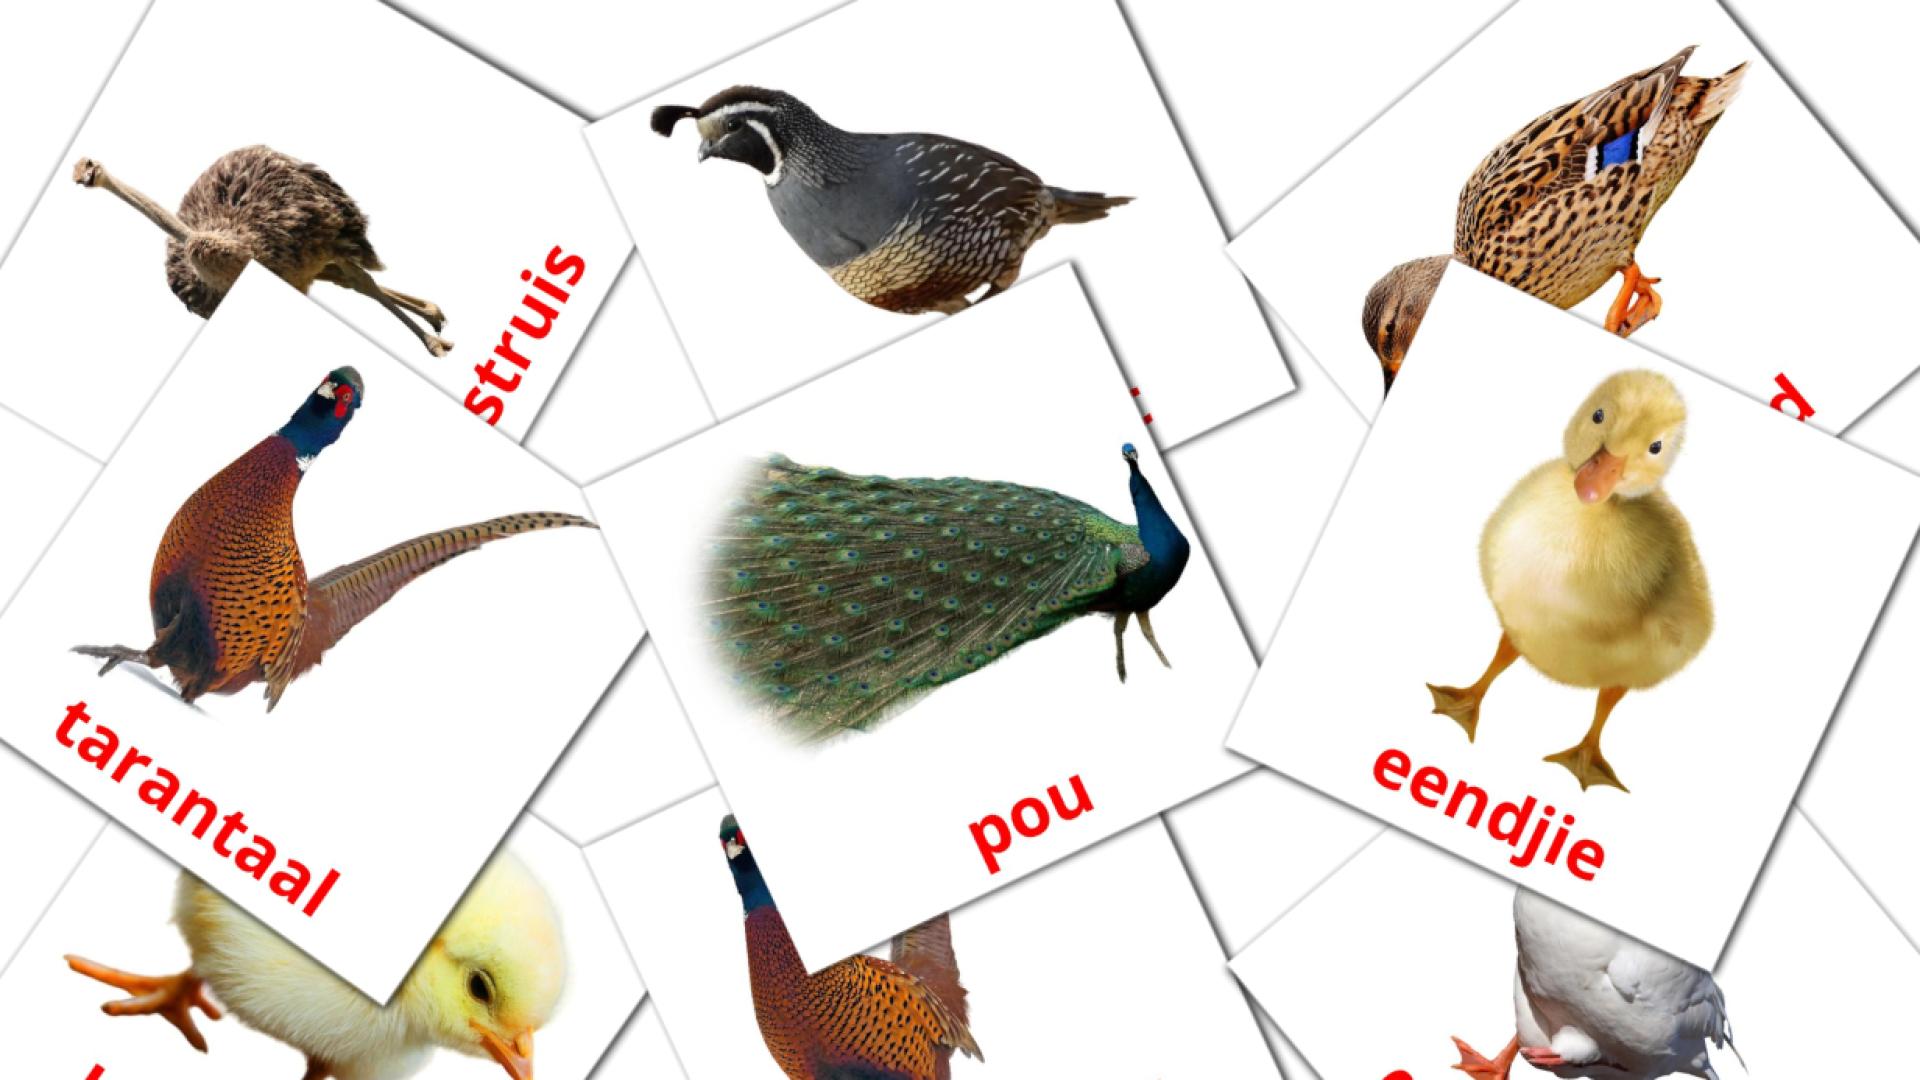 Bauernhof Vögel - Afrikaans Vokabelkarten